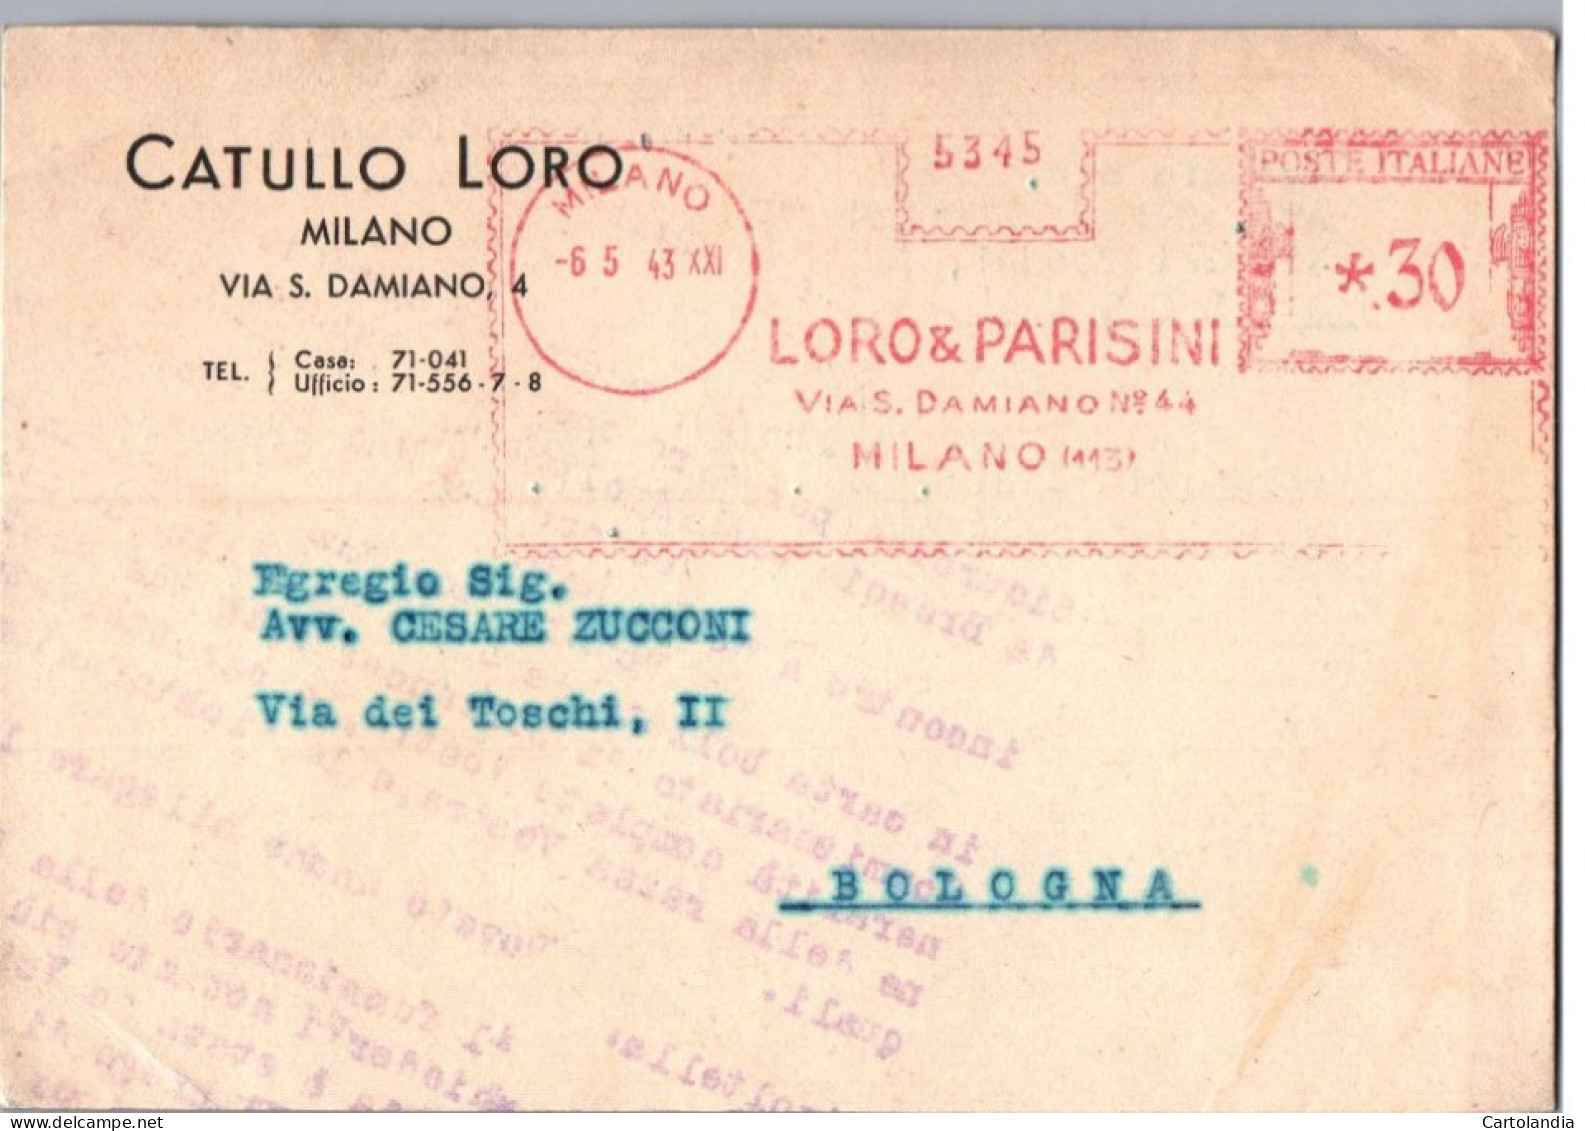 ITALIA 1943  -   Annullo Meccanico Rosso (EMA)   Loro & Parisini  Milano - Maschinenstempel (EMA)